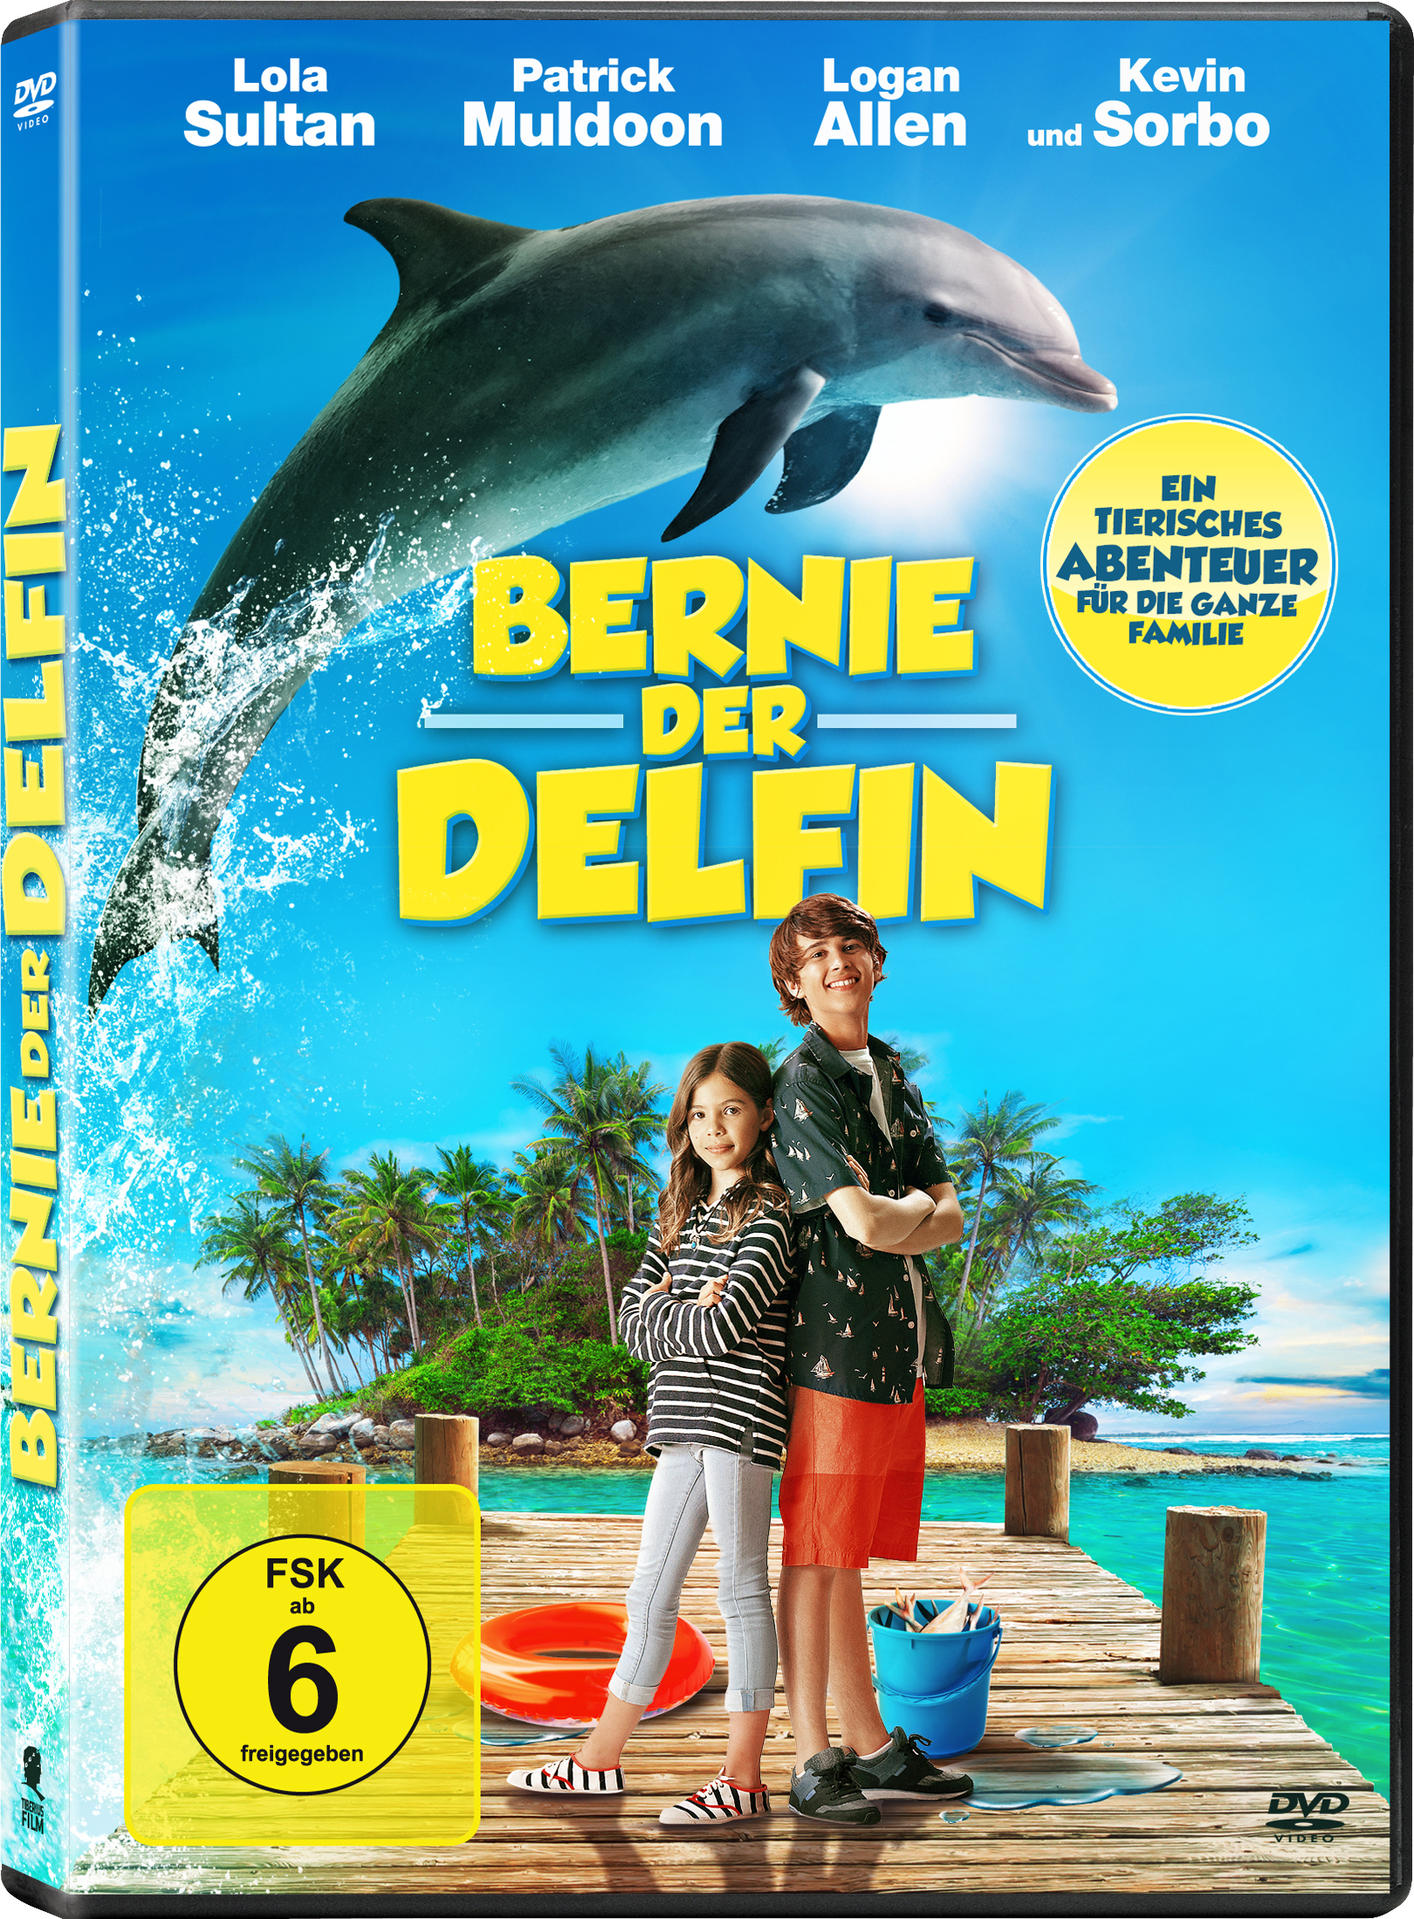 Delfin DVD Bernie, der